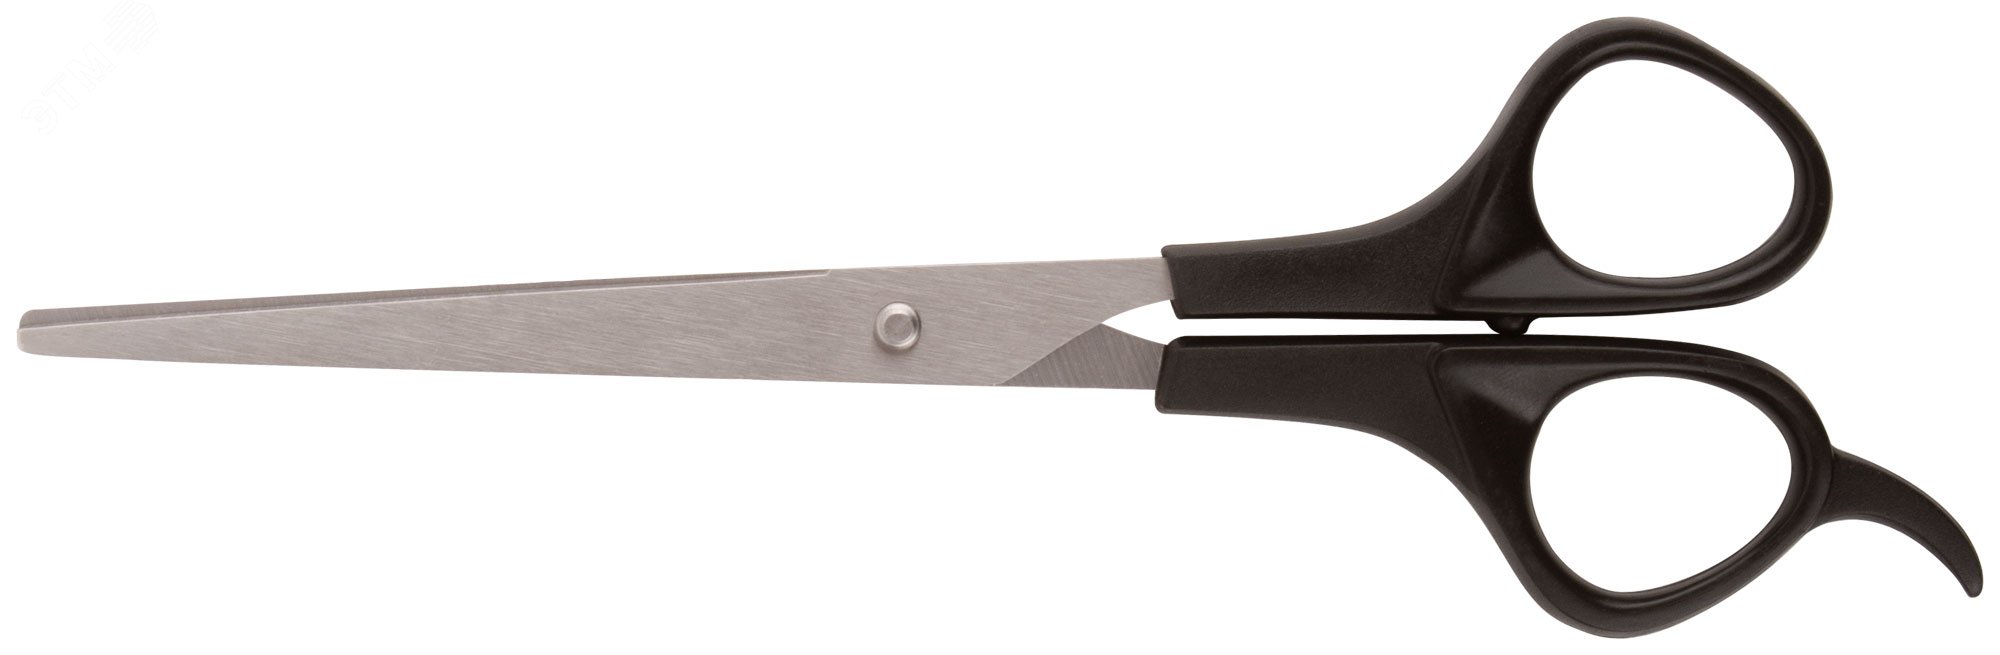 Ножницы бытовые нержавеющие, пластиковые ручки, толщина лезвия 1.5 мм, 190 мм 67353 FIT - превью